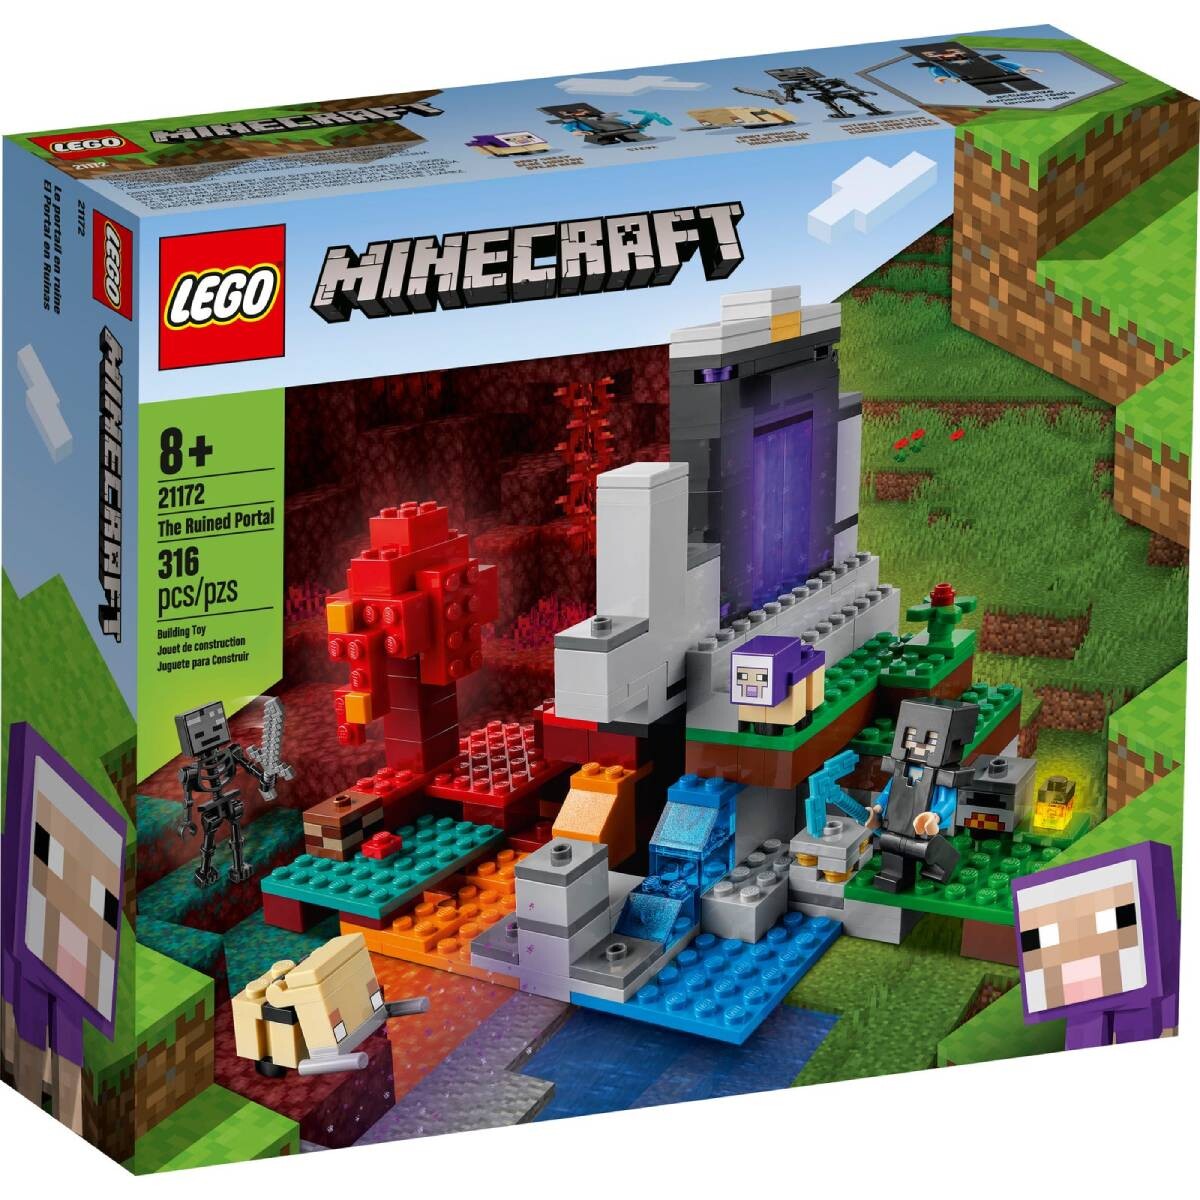 LEGO Minecraft: El Portal Arruinado 